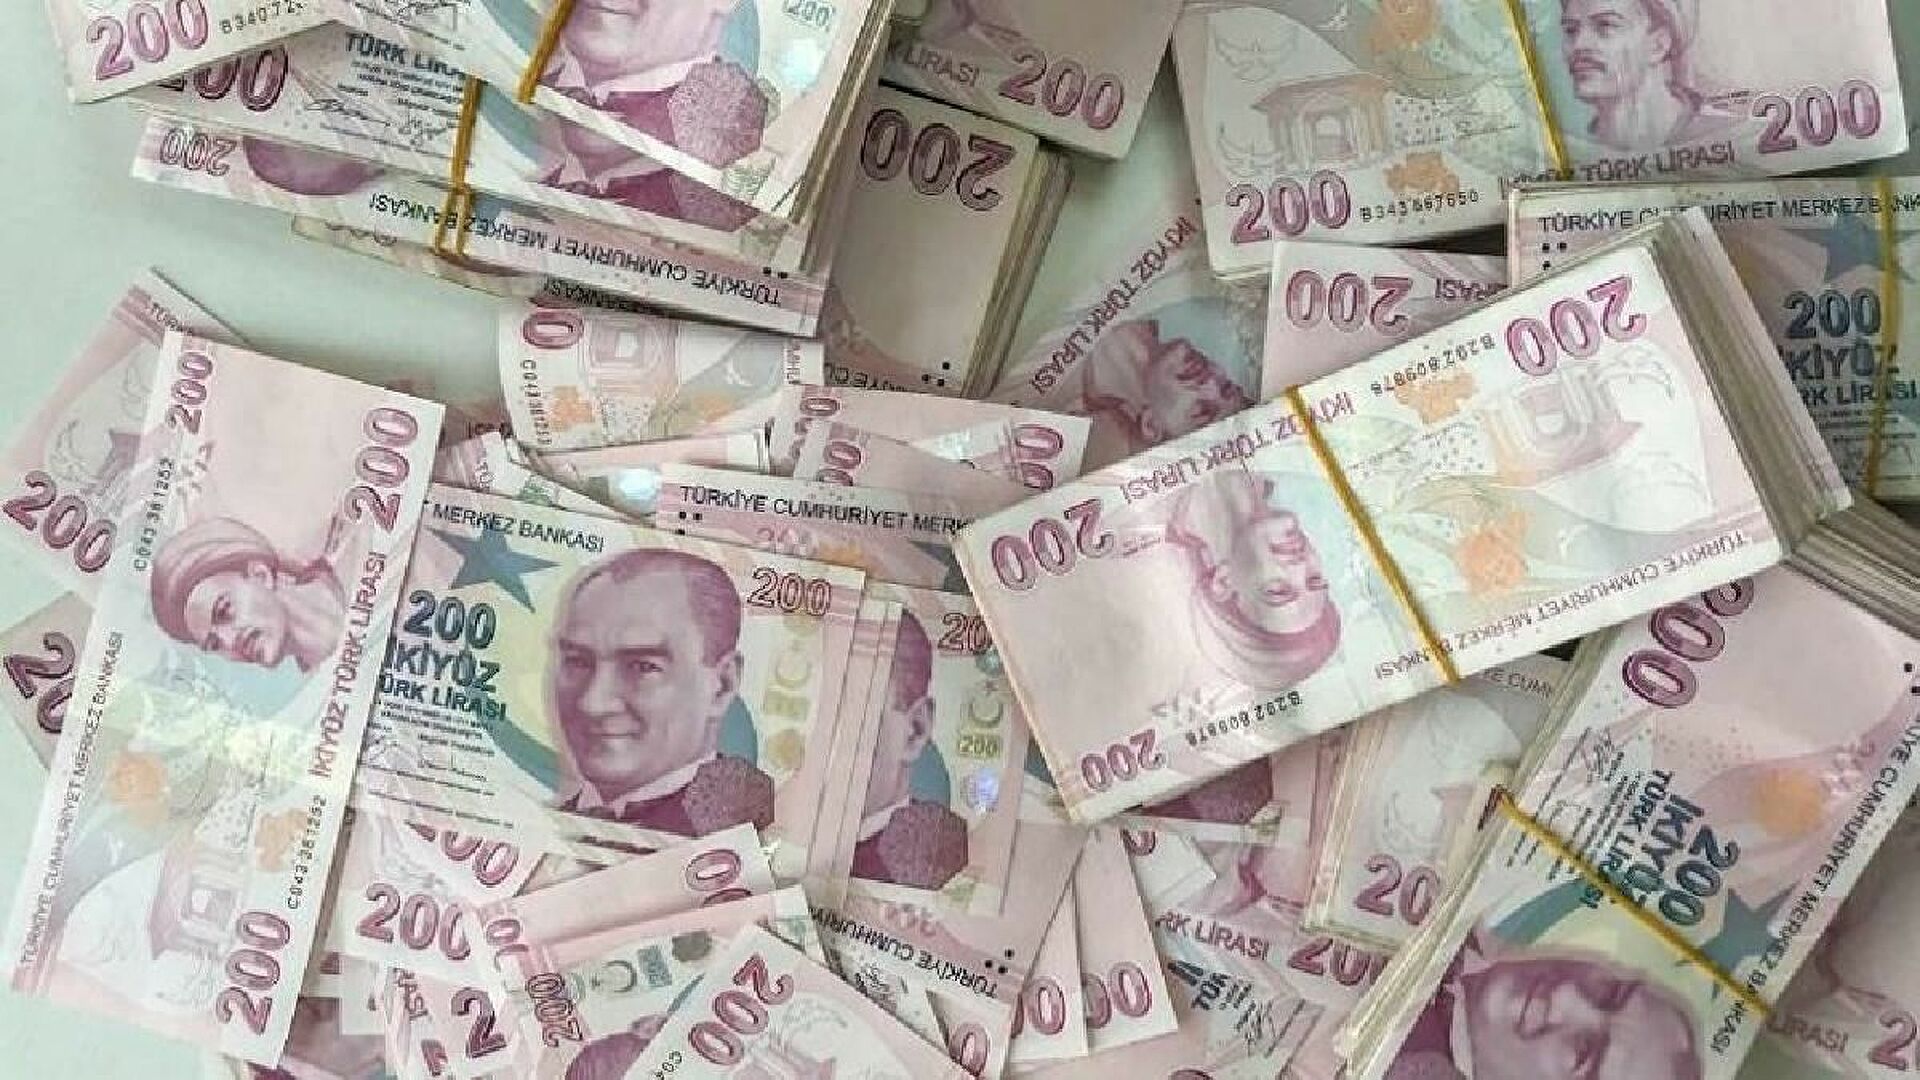 Halkbank'tan Emeklilere Özel Ödeme! TC Kimliğiyle Başvurana 500.000 TL'ye Kadar Ek Ödeme